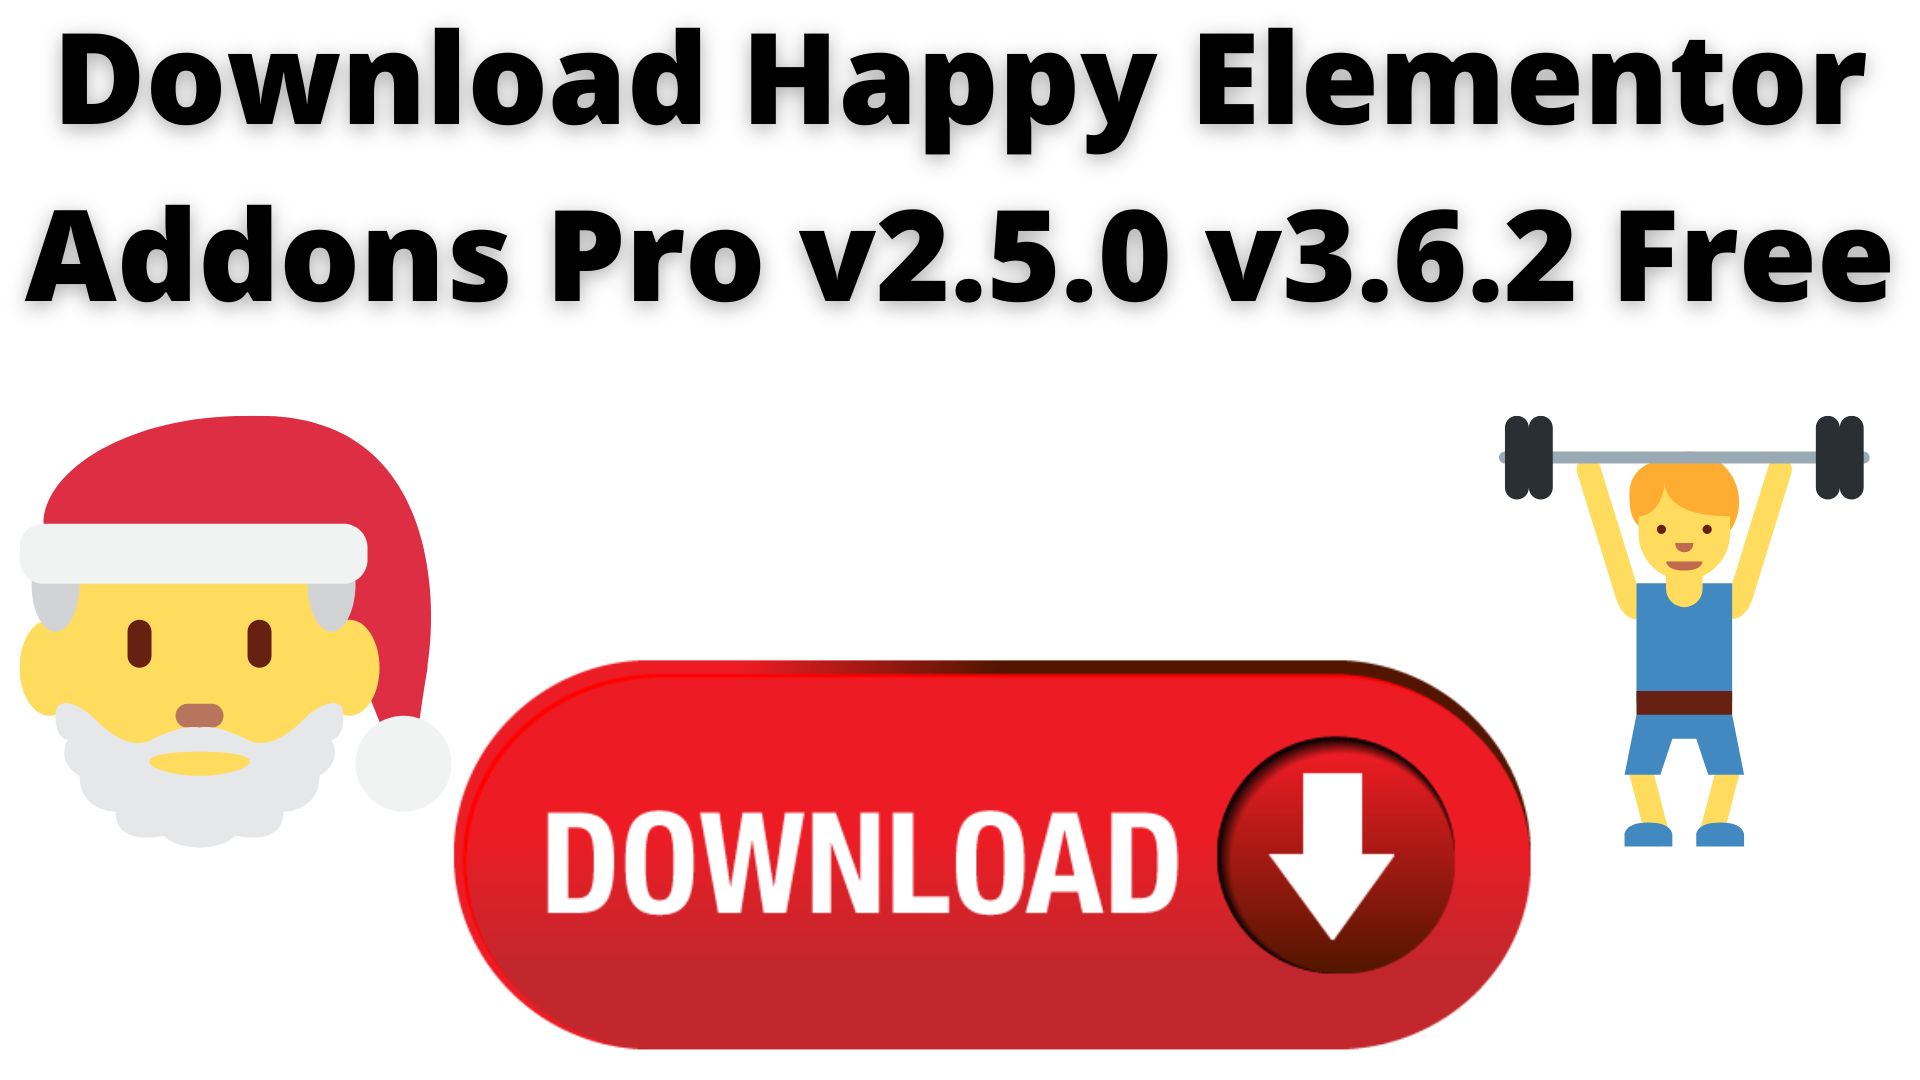 Download Happy Elementor Addons Pro V2.5.0 V3.6.2 Free